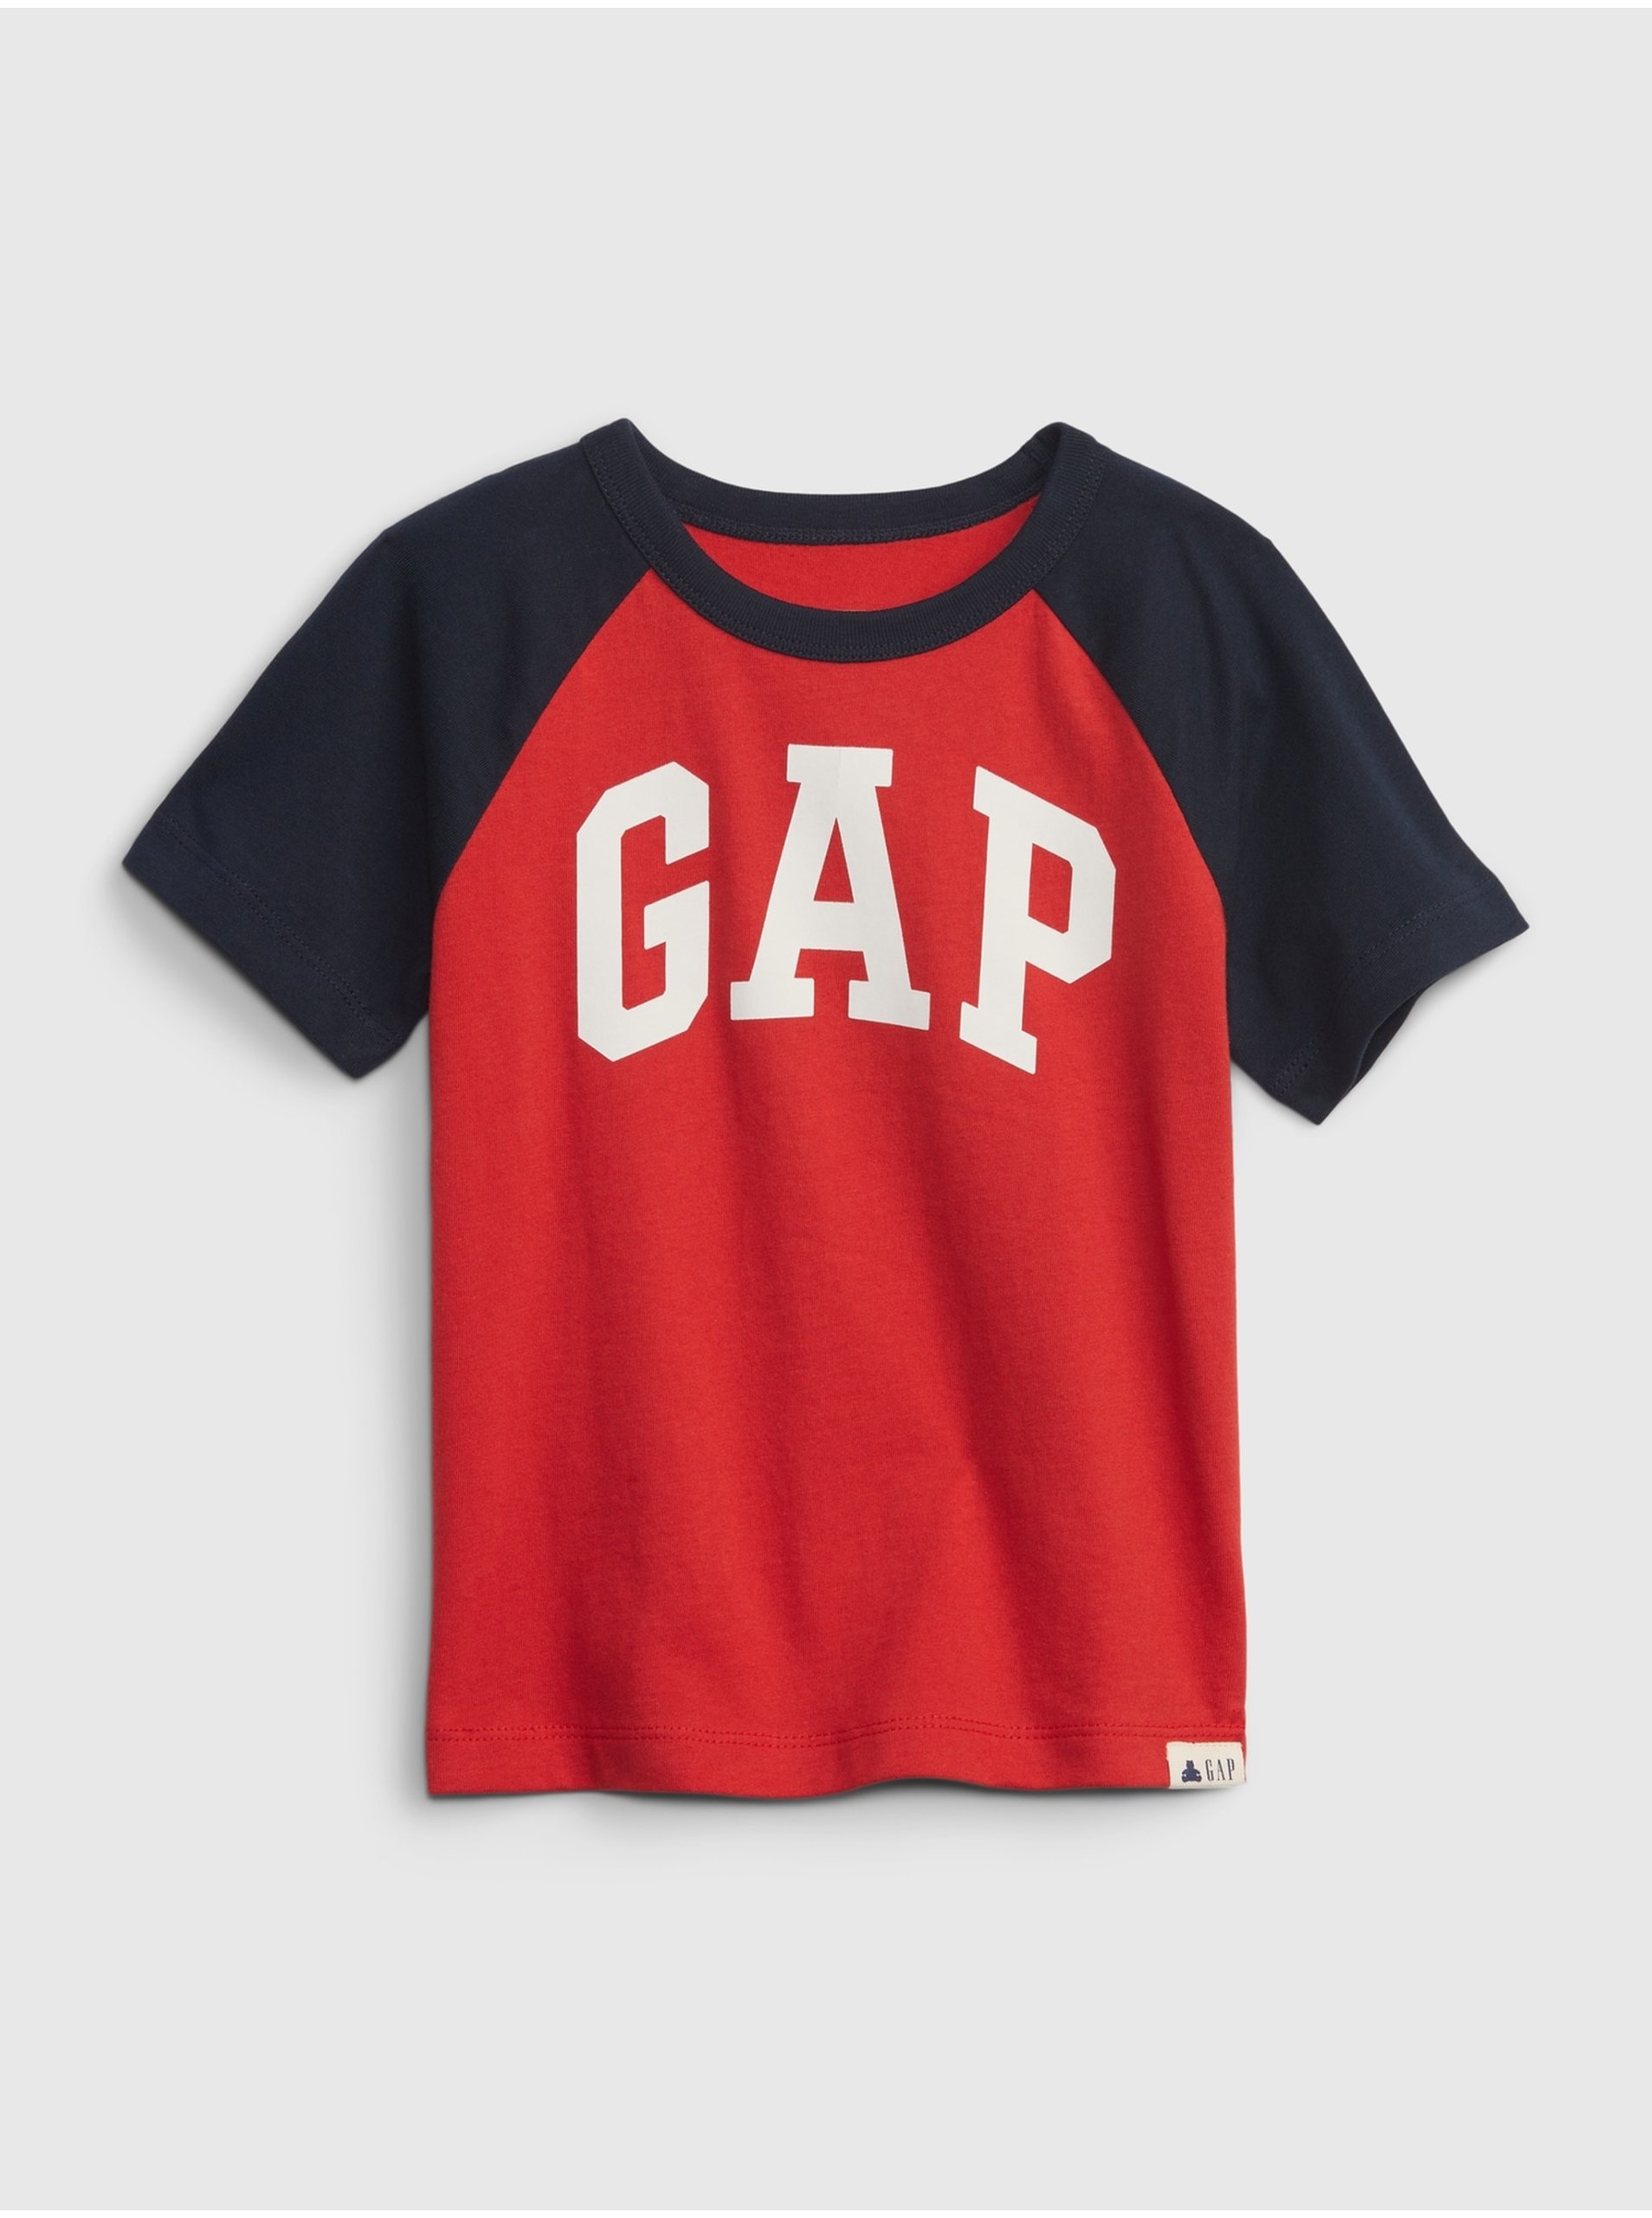 Lacno Čierno-červené chlapčenské tričko s logom GAP